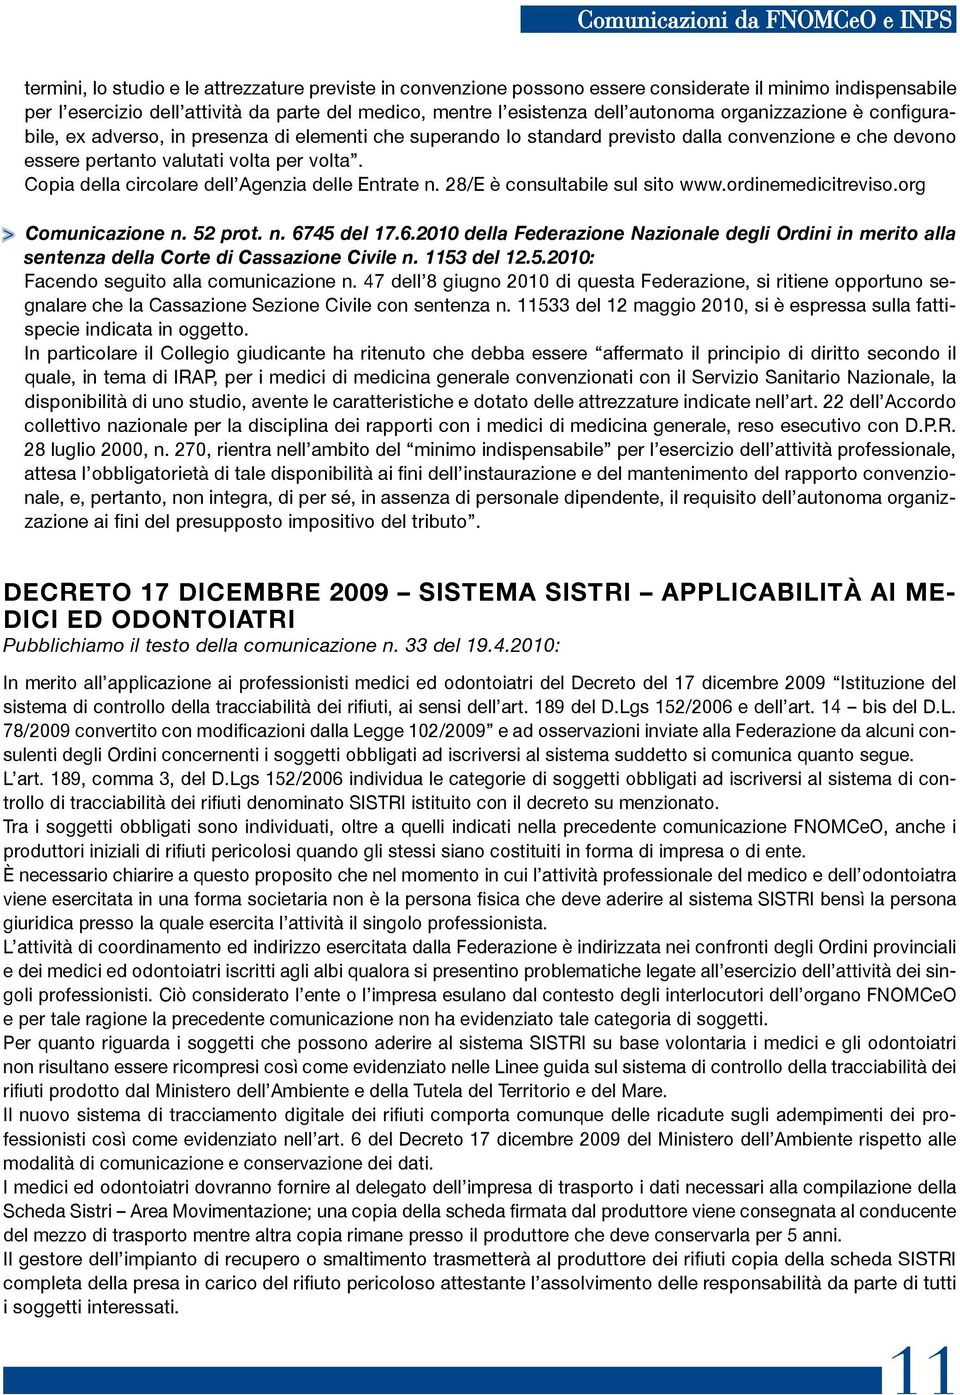 per volta. Copia della circolare dell Agenzia delle Entrate n. 28/E è consultabile sul sito www.ordinemedicitreviso.org > Comunicazione n. 52 prot. n. 67